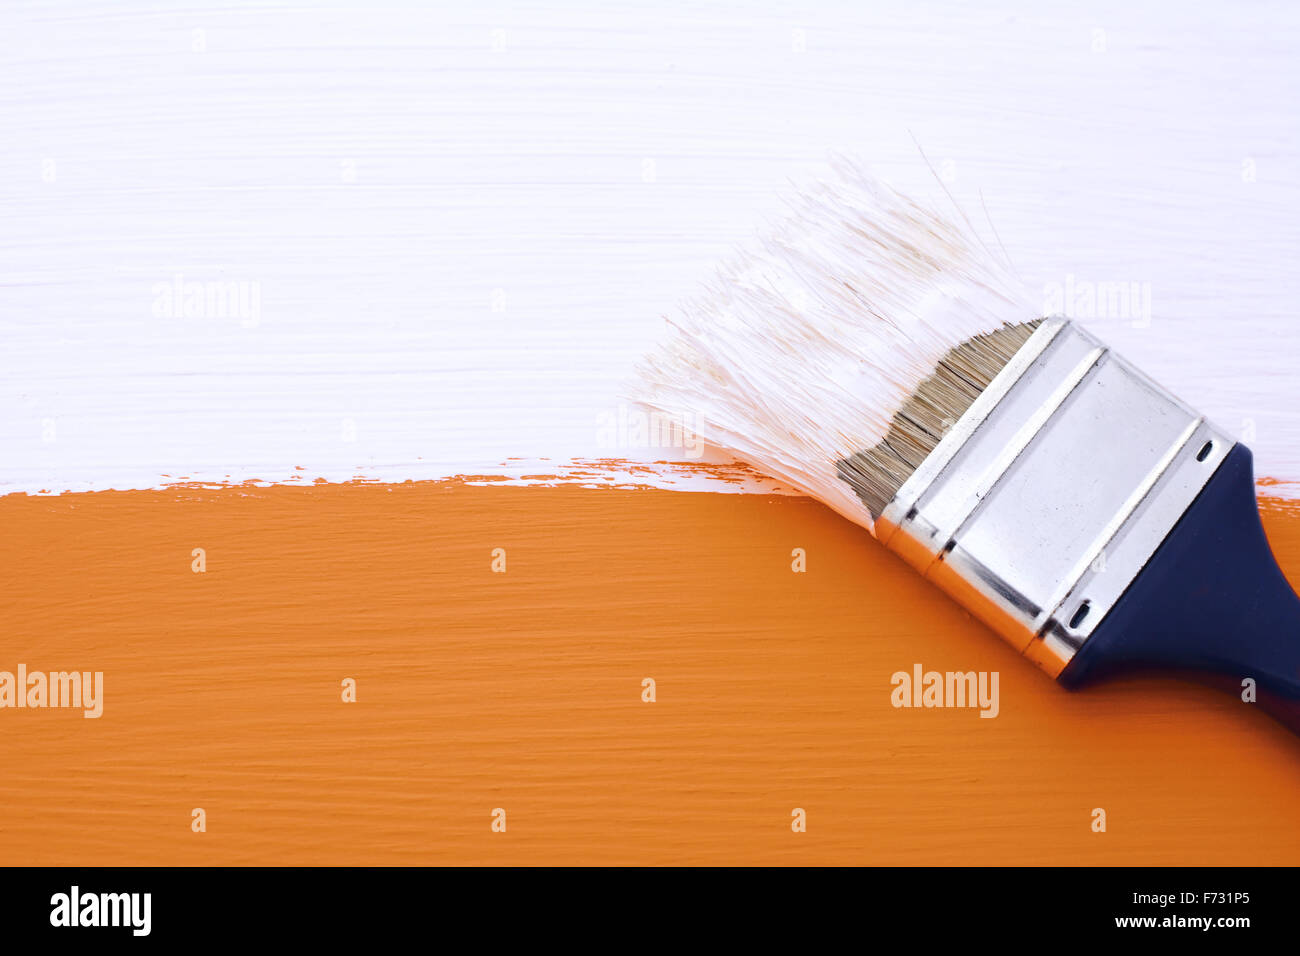 La verniciatura arancione superficie in legno con vernice bianca, pennello sporco si trova sulla parte superiore Foto Stock